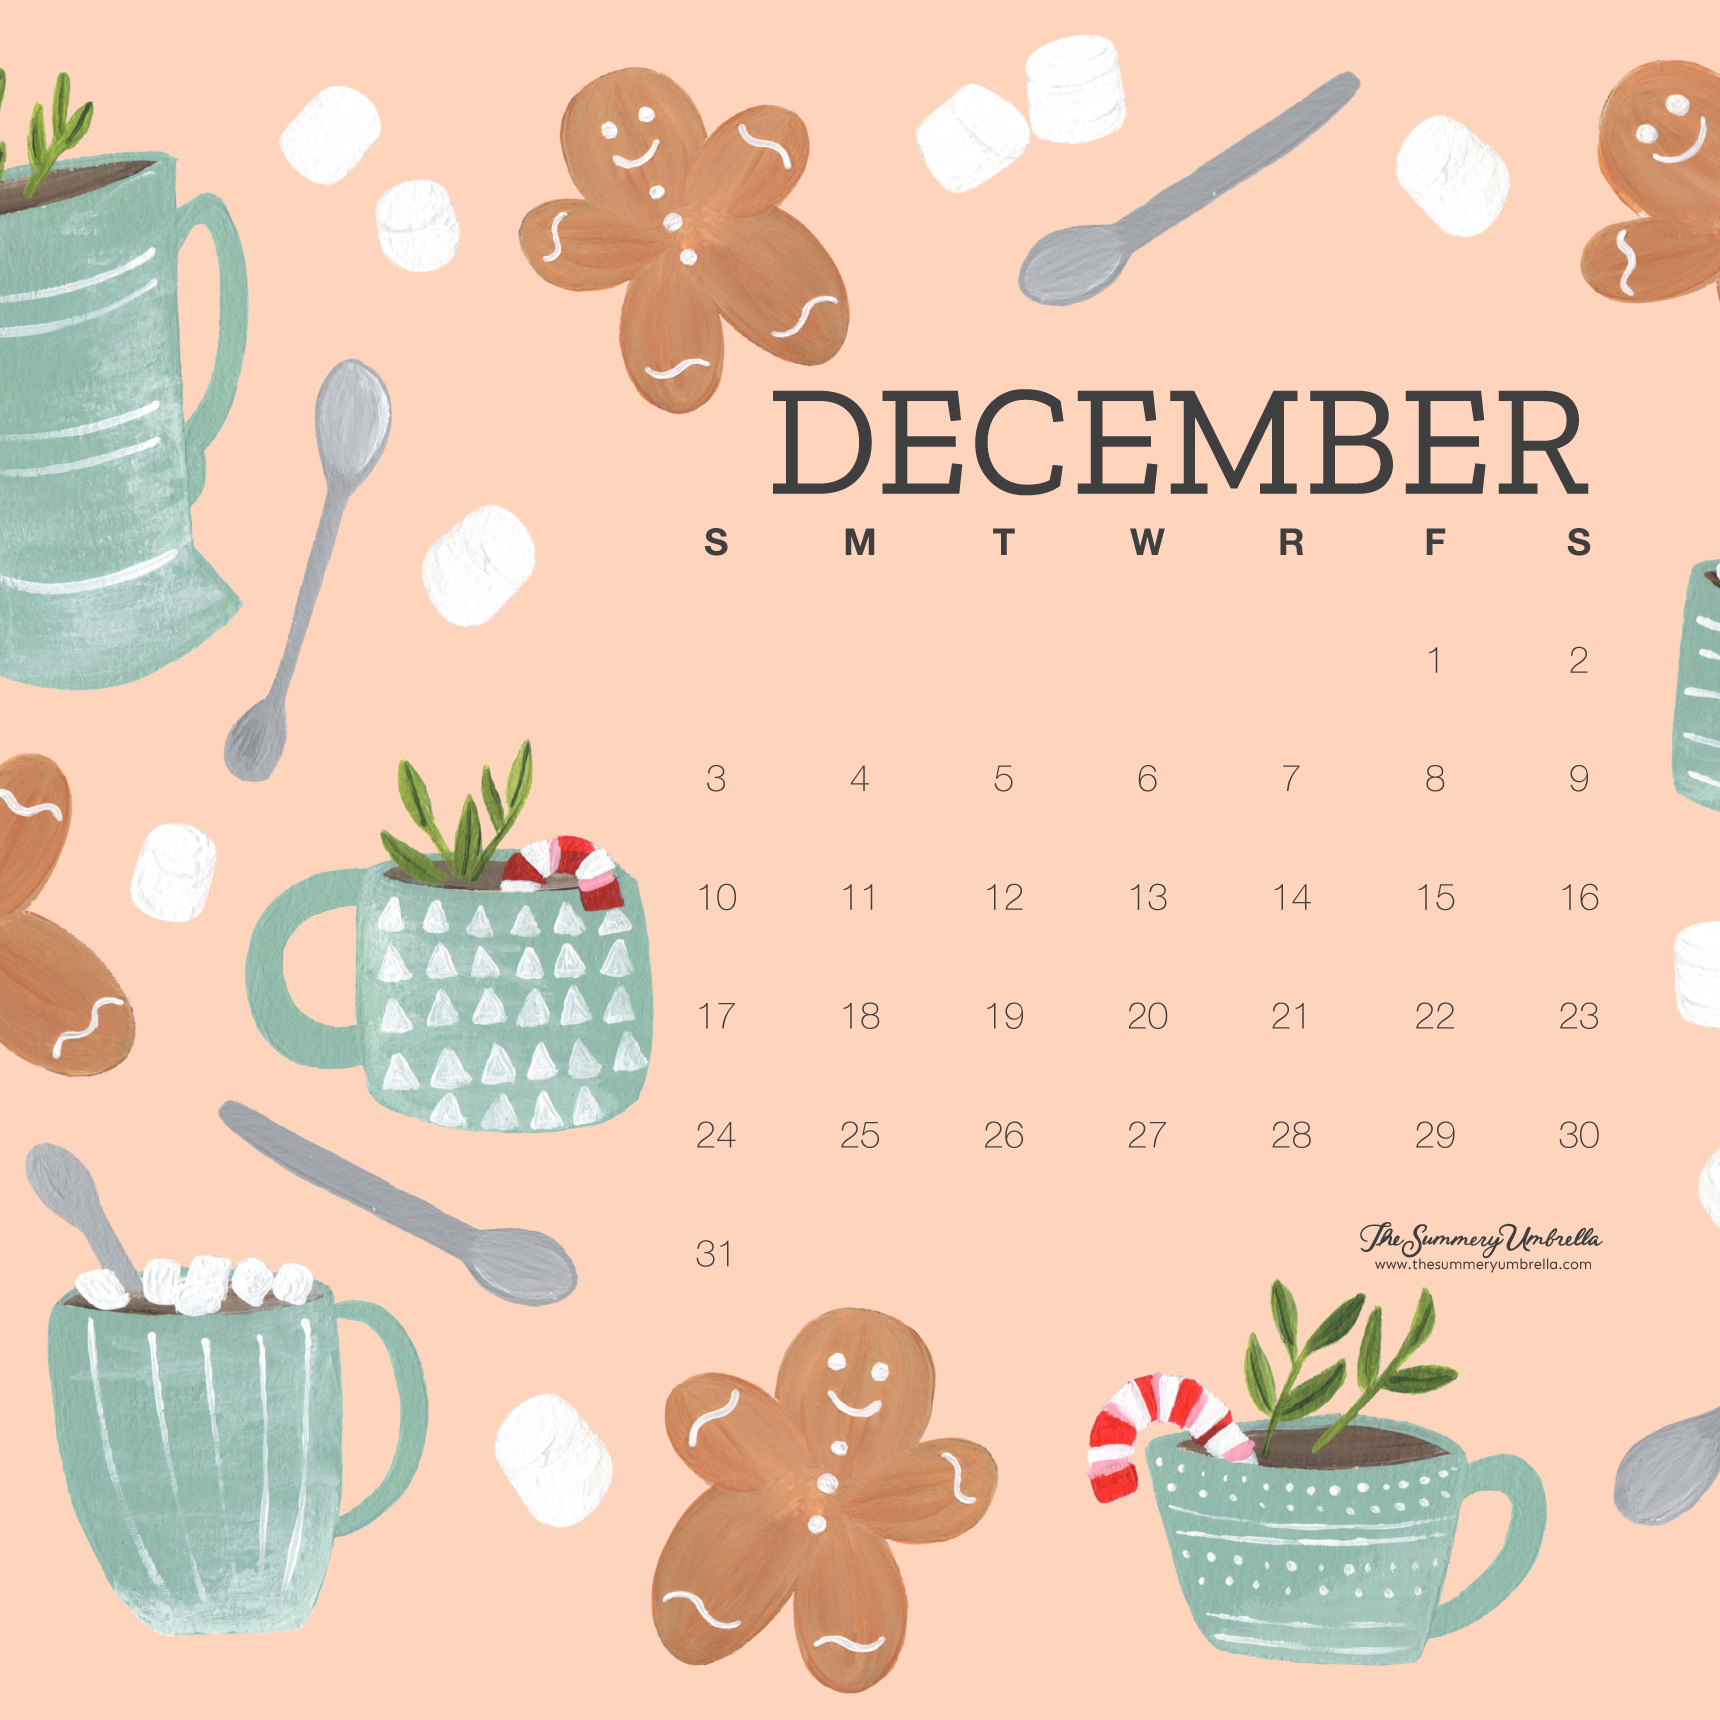 A Free December Calendar to Get You Through the Holidays!